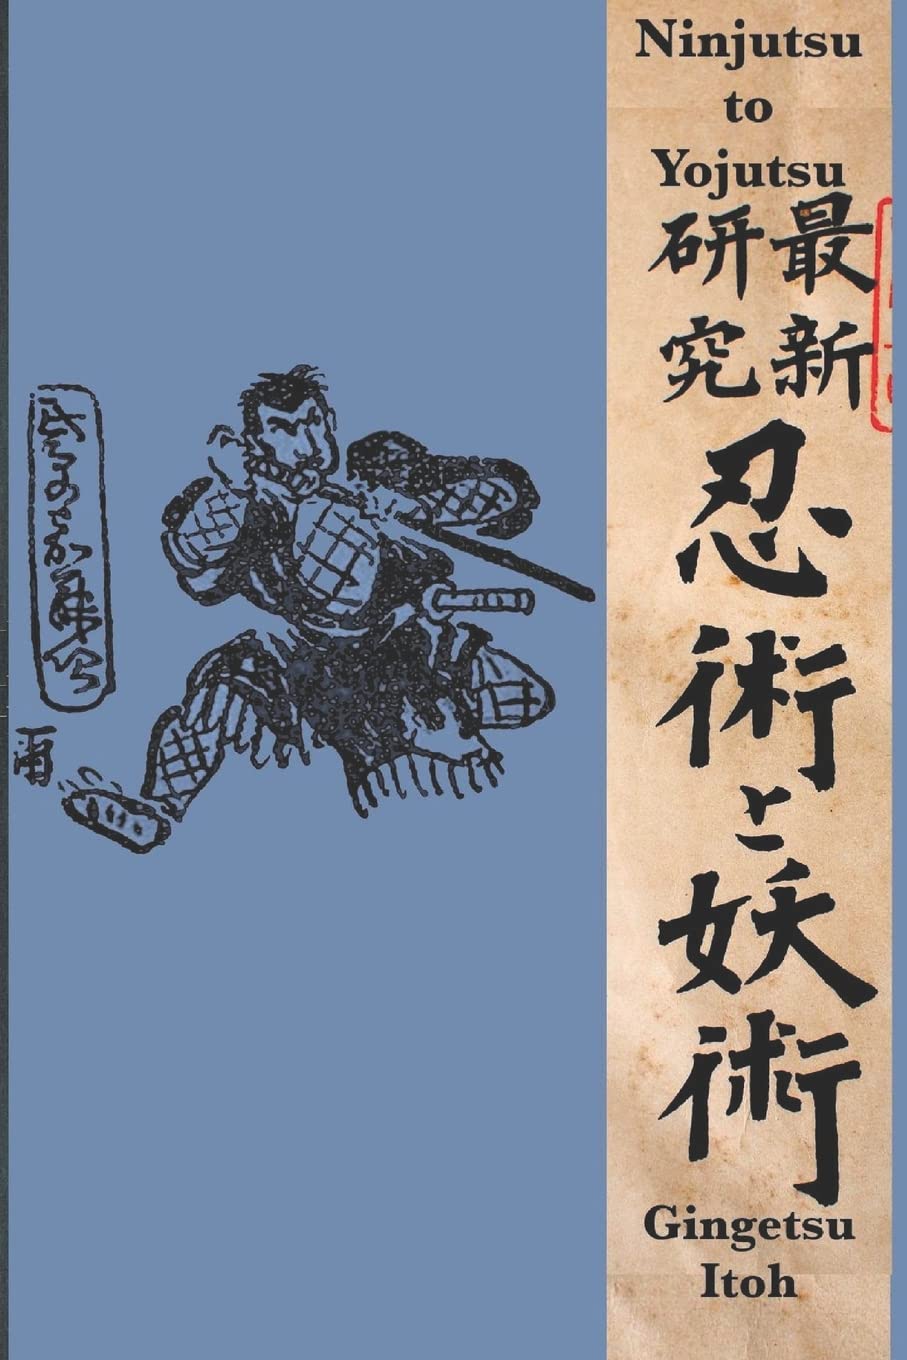 Ninjutsu to Yojutsu Book by Gingetsu Itoh